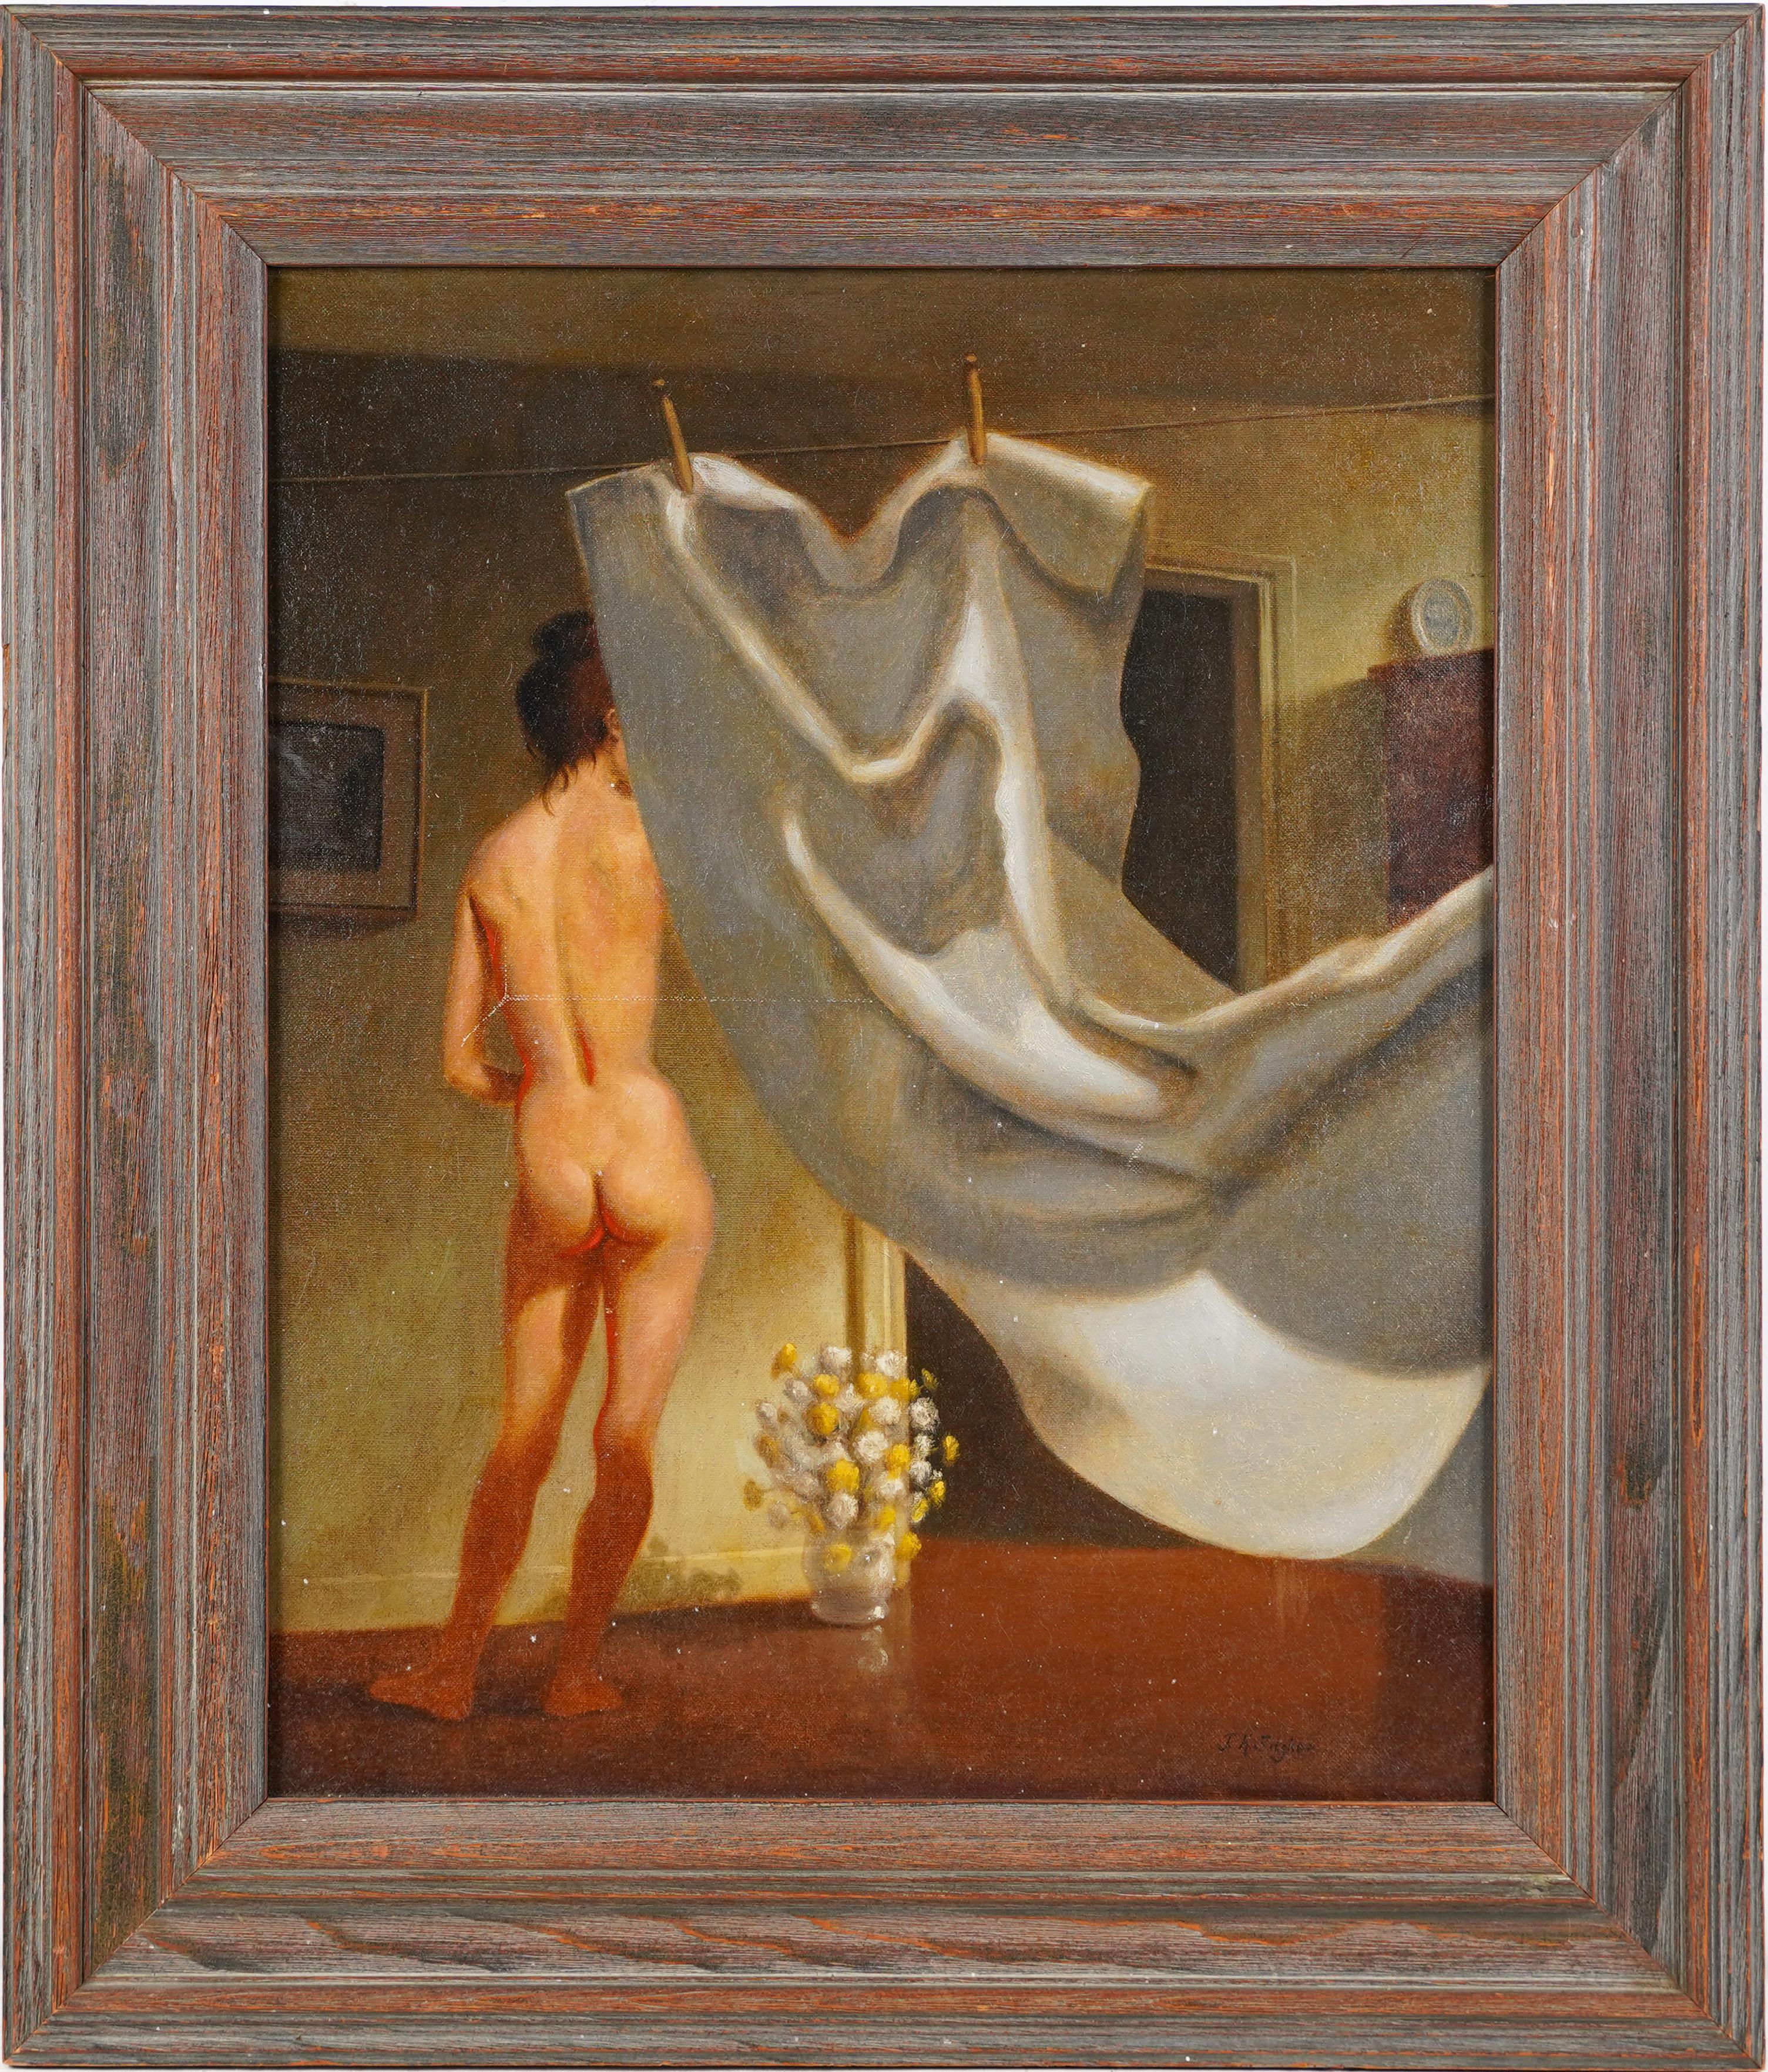 Unknown Interior Painting – Amerikanische Schule, signiert Trompe L'Oeil, nacktes Frauenporträt, Ölgemälde